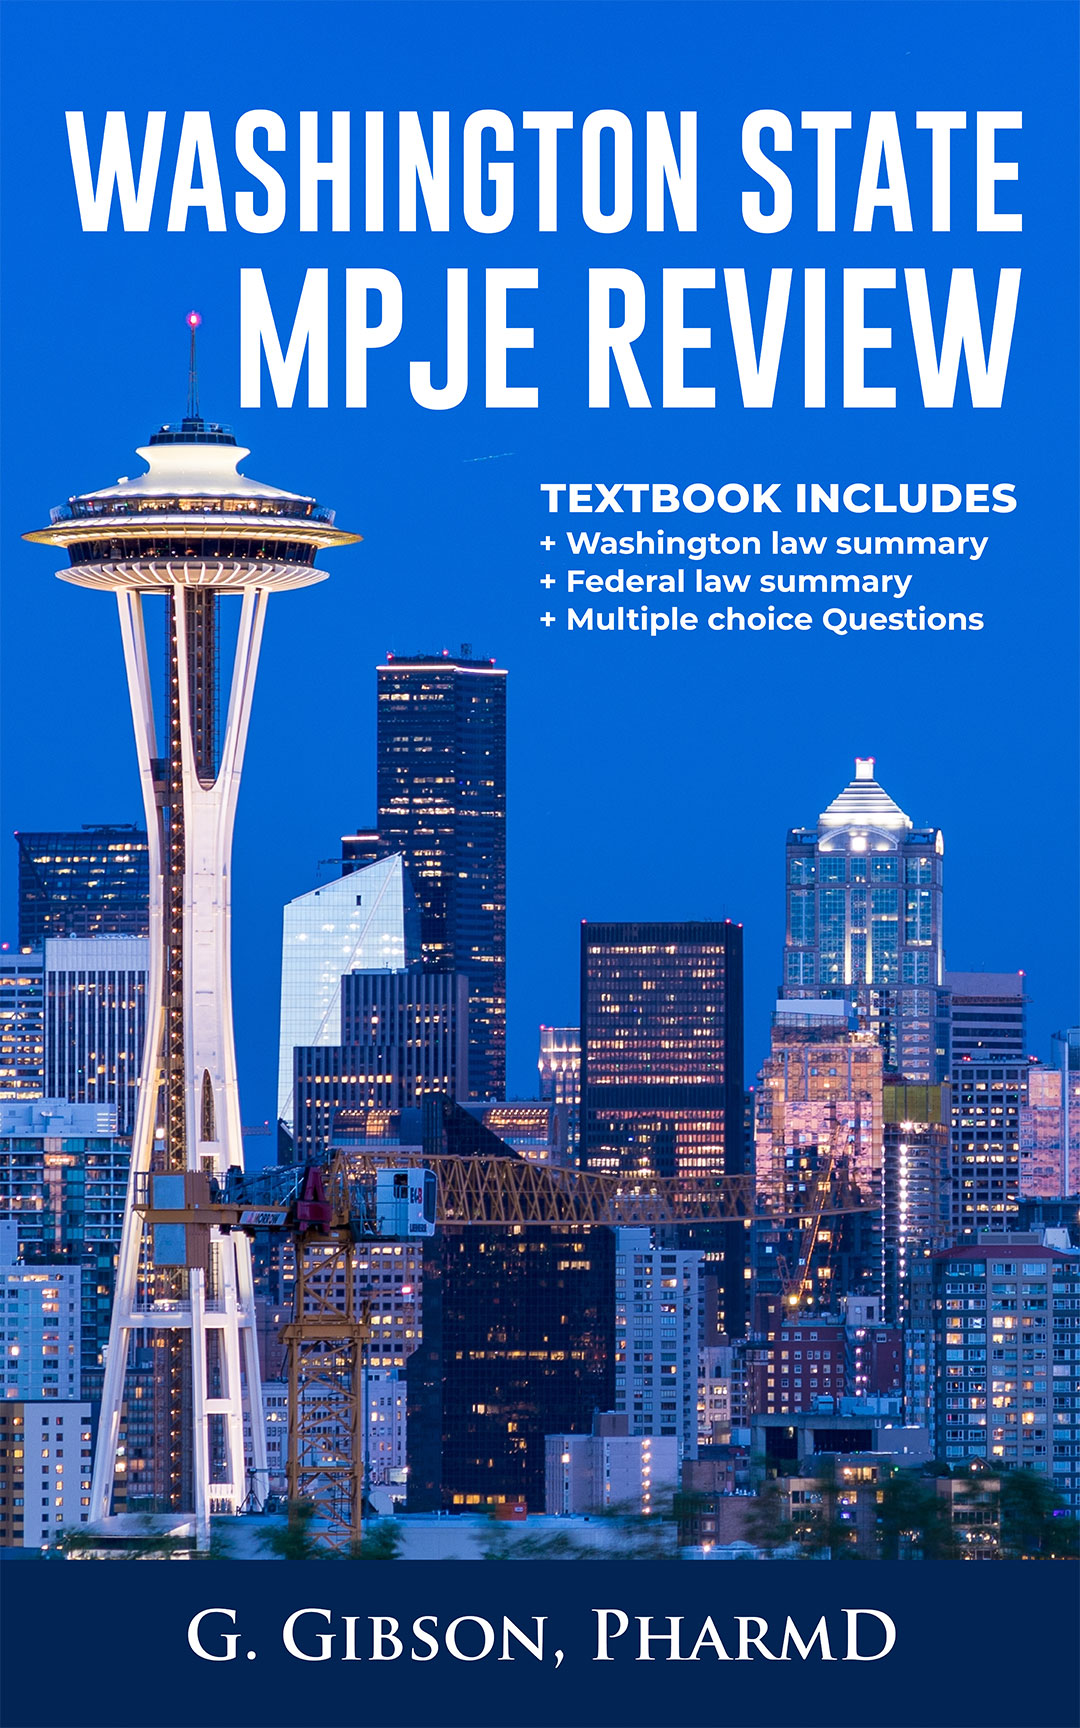 Washington State MPJE Review